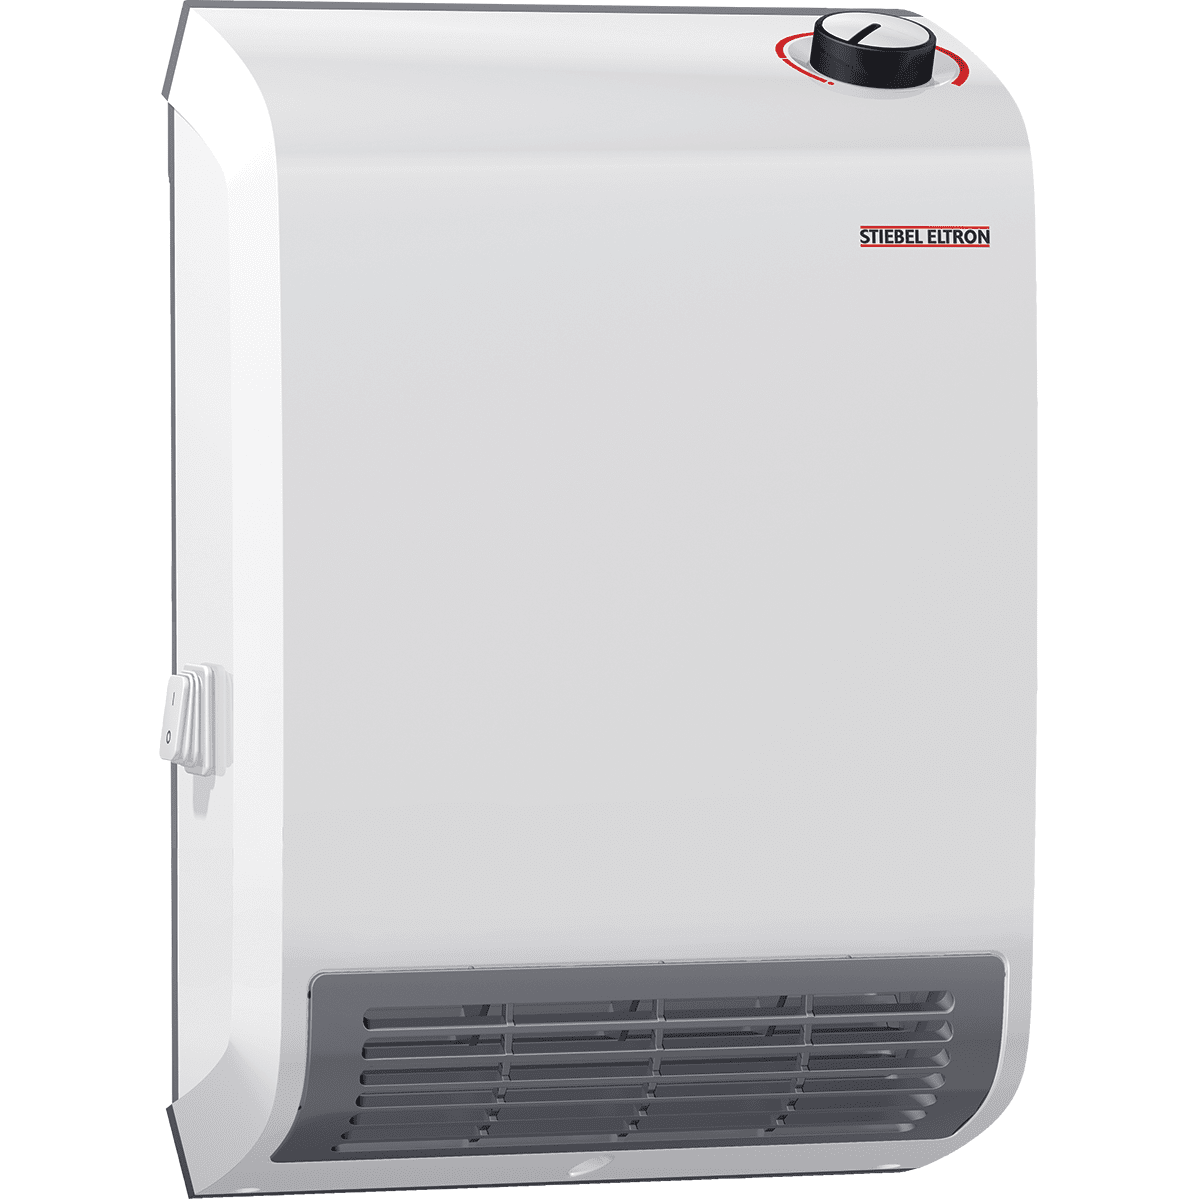 Stiebel Eltron Ck Trend Wall-mounted Electric Fan Heater 120v (ck150-1)